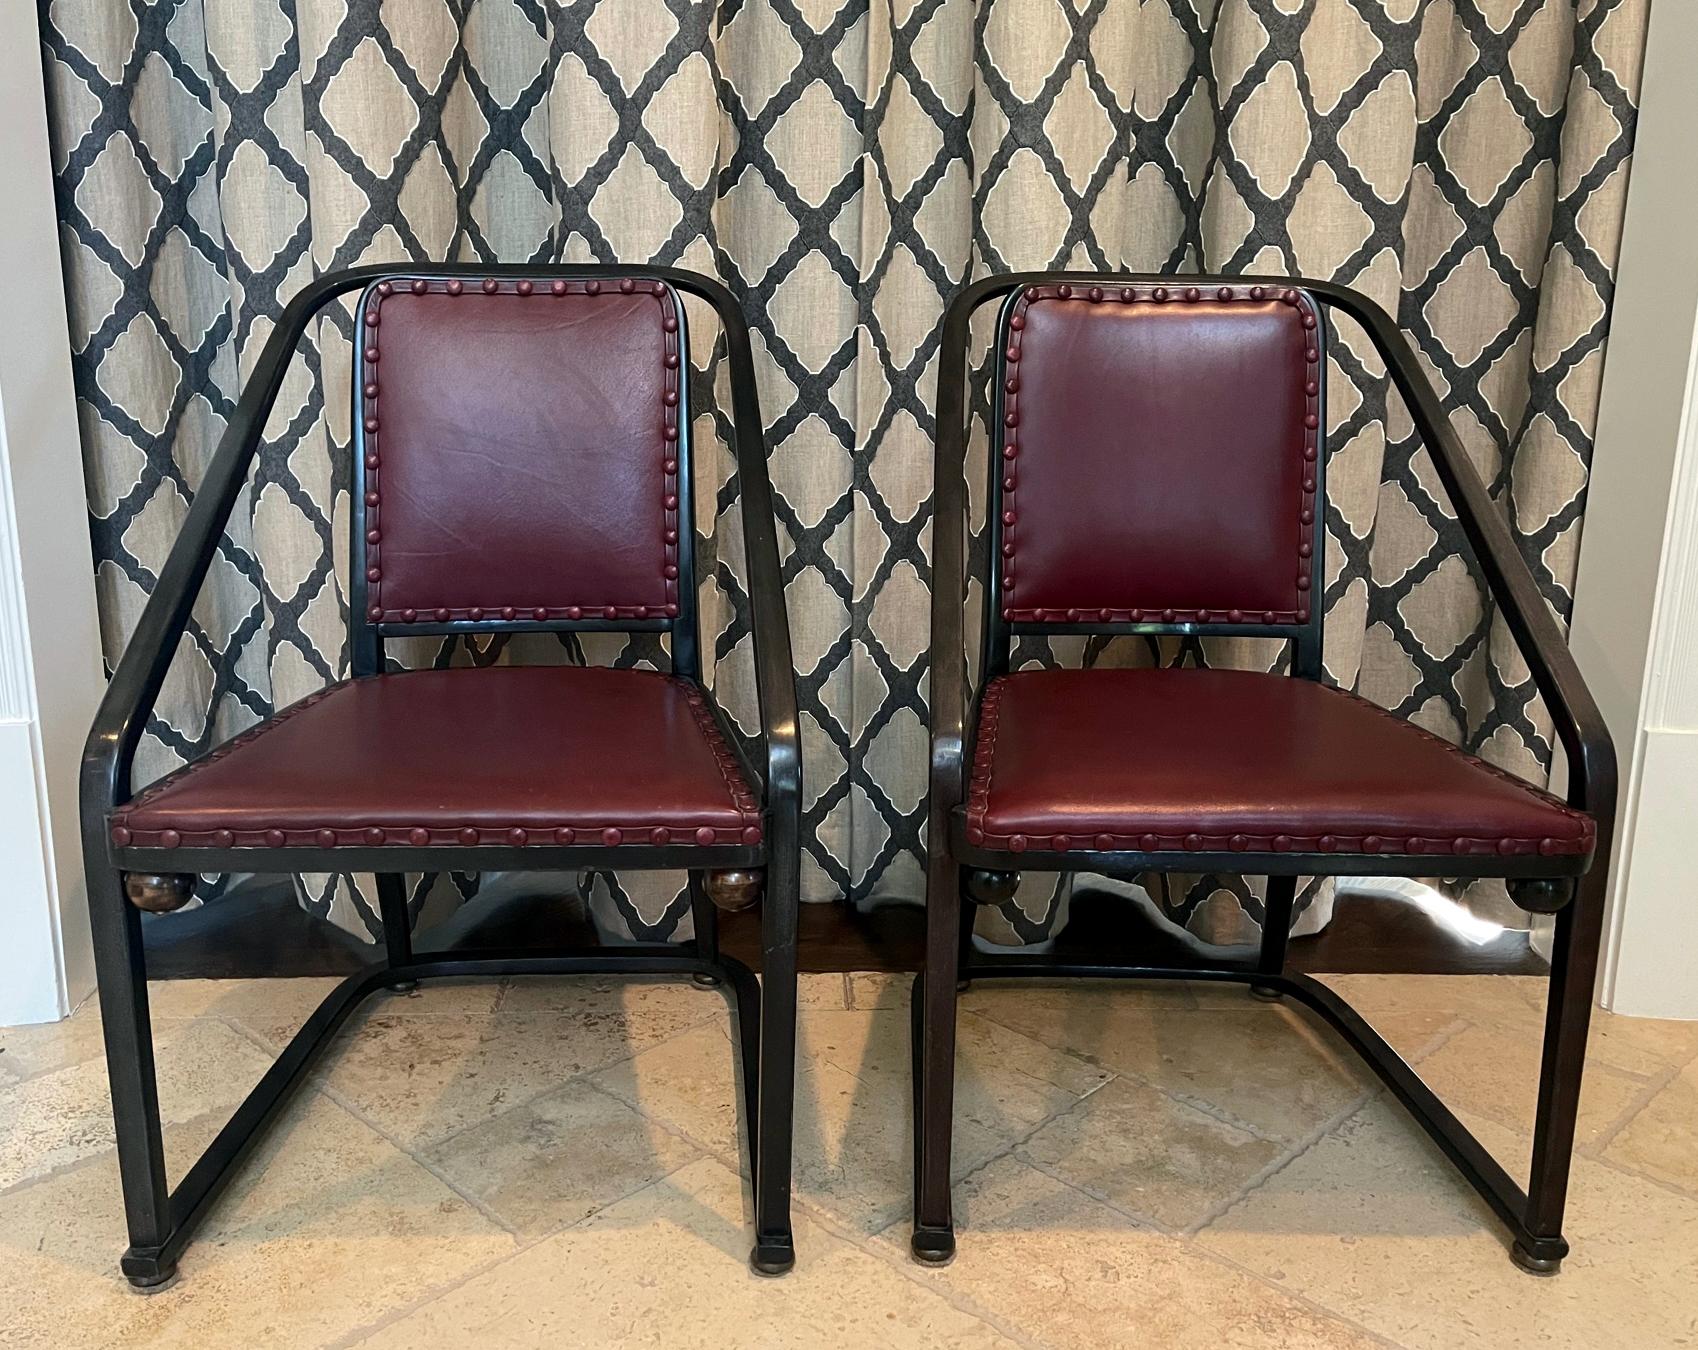 Paar fantastische Bugholzstühle der Wiener Sezession mit Polsterung, entworfen von Josef Hoffman (1870-1956) und hergestellt von J. & J. Kohn um das frühe 20. Jahrhundert. Bei diesen Sesseln handelt es sich um das Modell 725 B/F, das 1905 entworfen